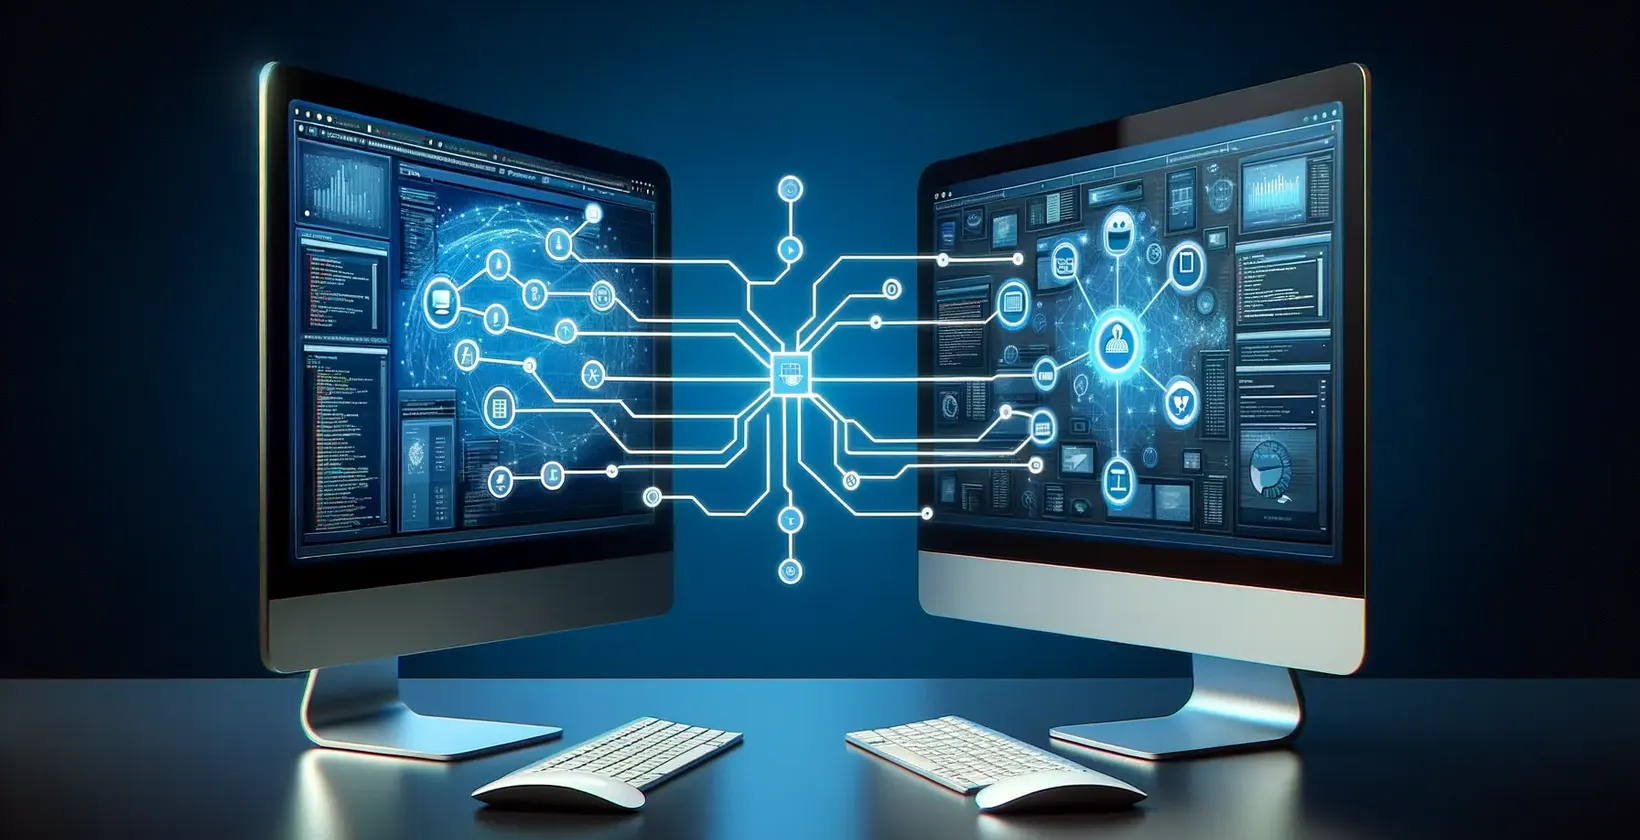 Δύο οθόνες υπολογιστών που εμφανίζουν ένα ψηφιακό περιβάλλον εργασίας, προβάλλοντας προηγμένες τεχνολογικές δυνατότητες.